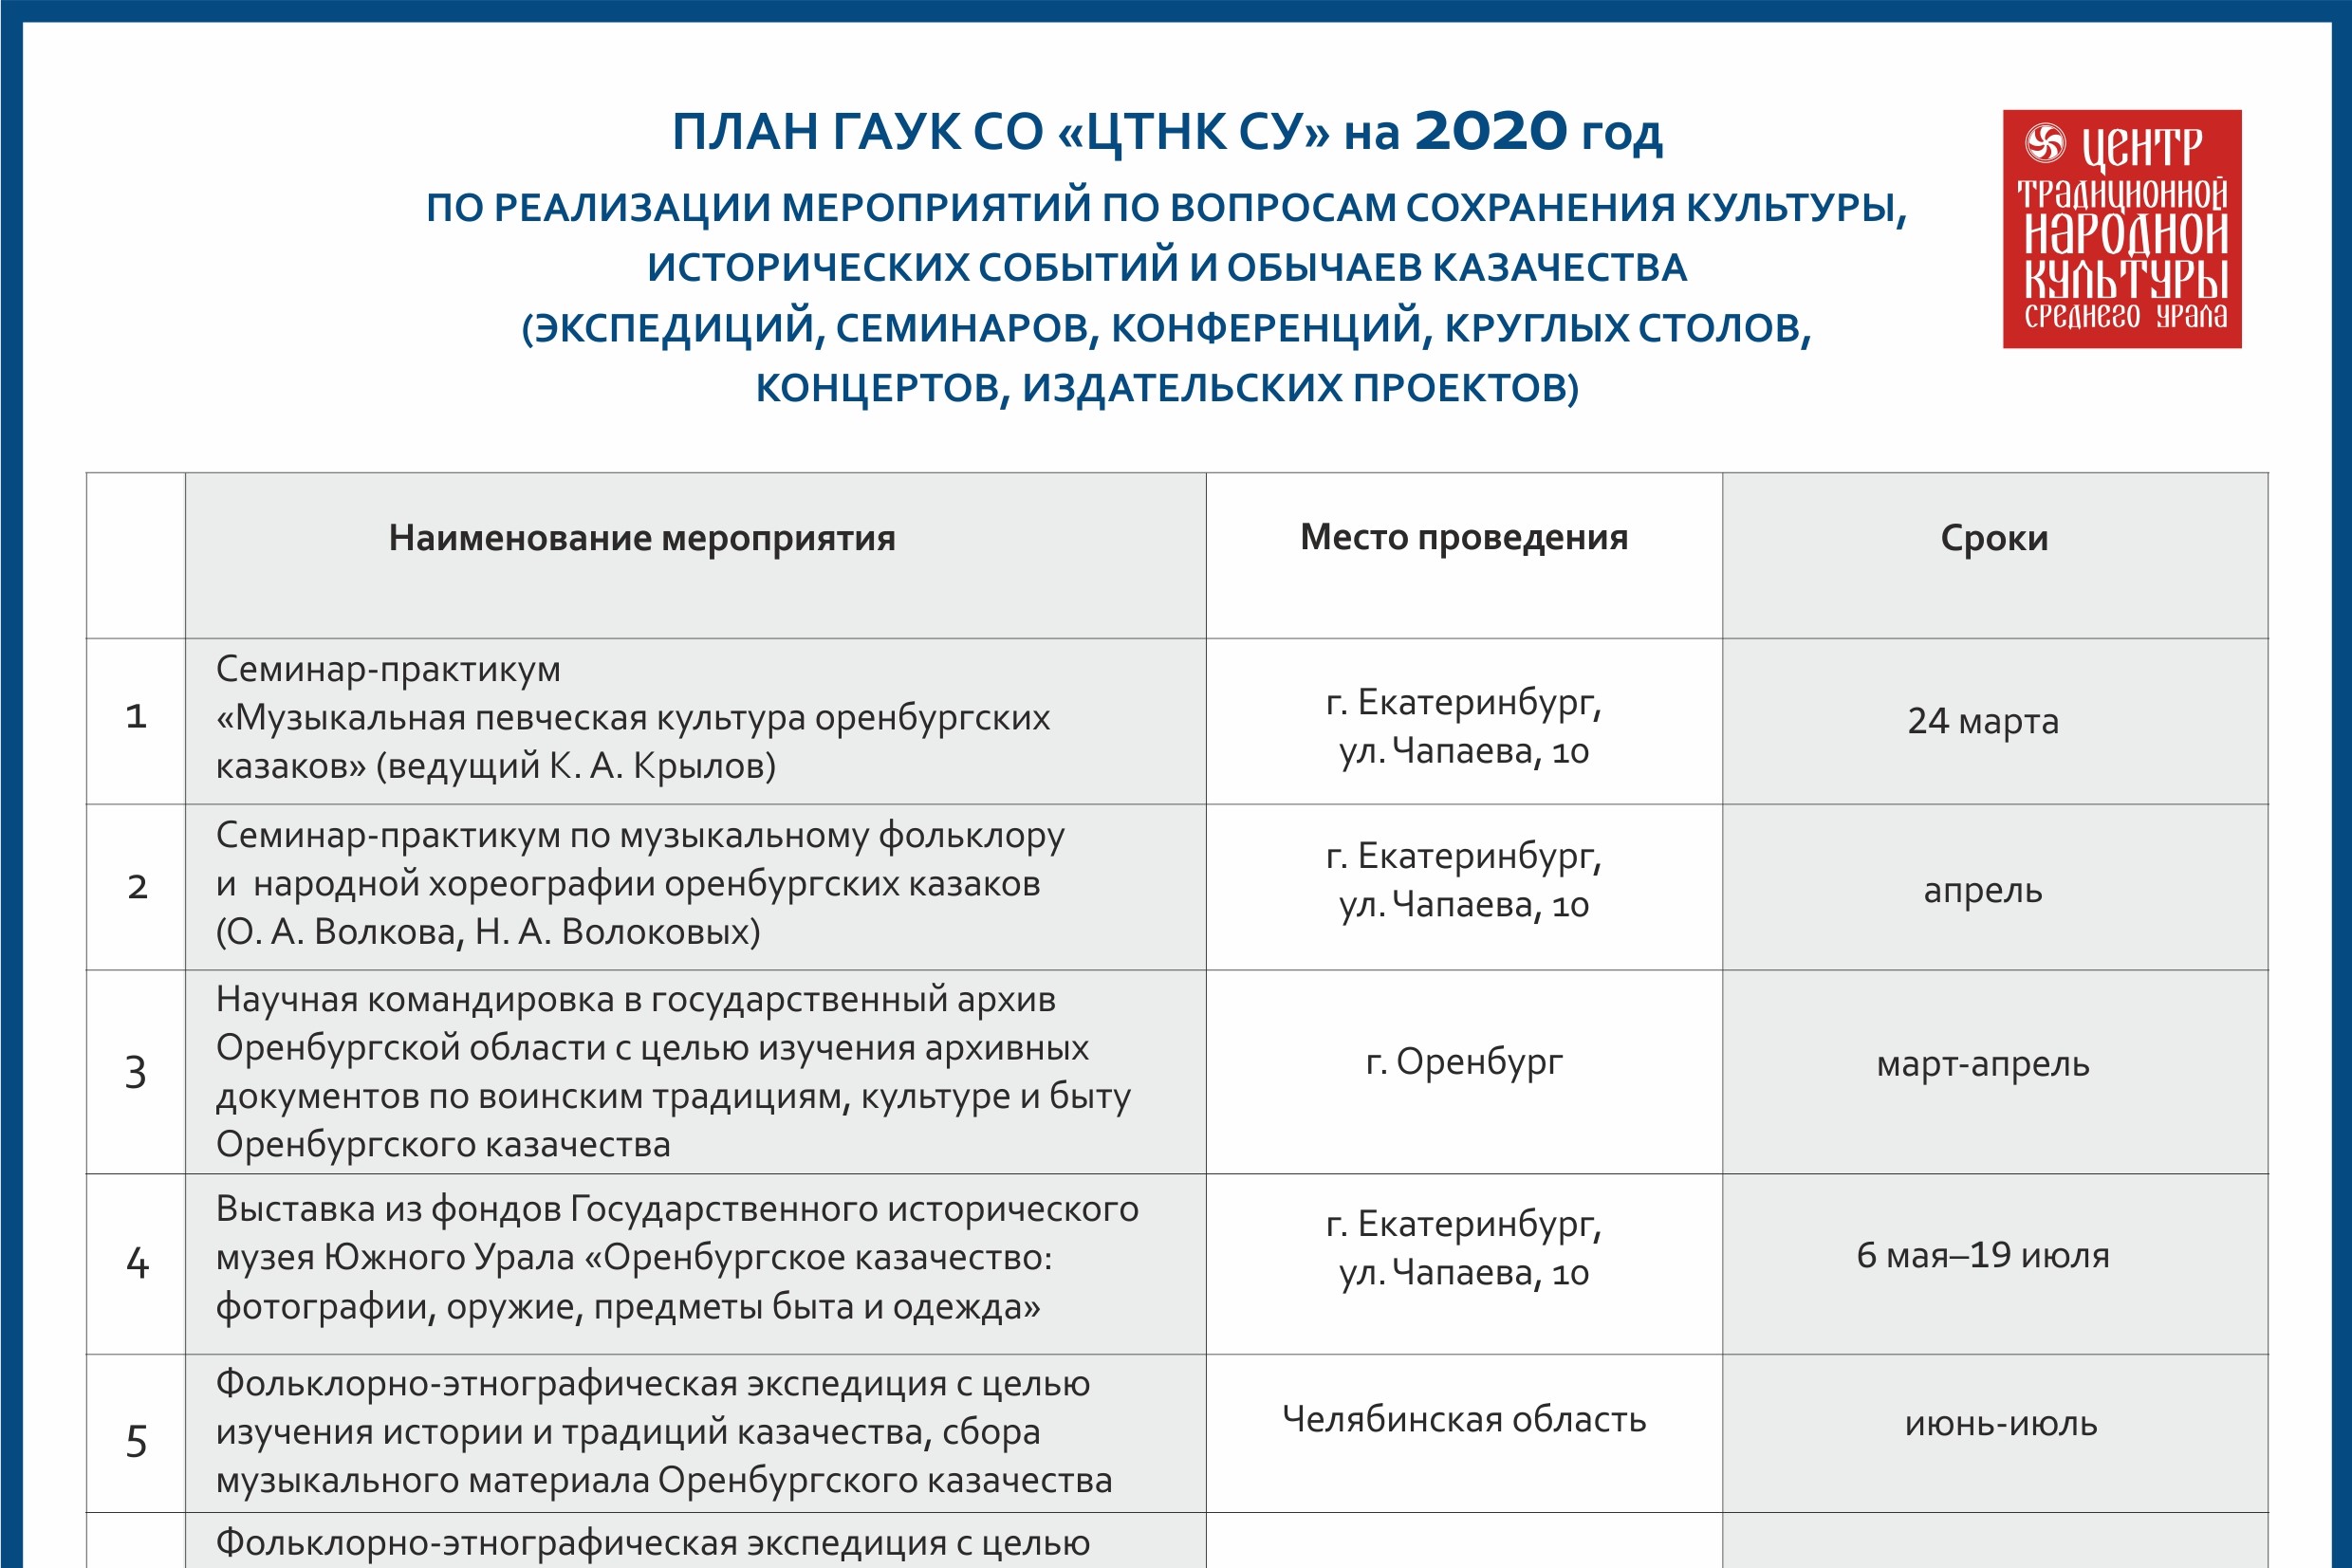 План ГАУК СО «Центр традиционной народной культуры Среднего Урала» на 2020 год